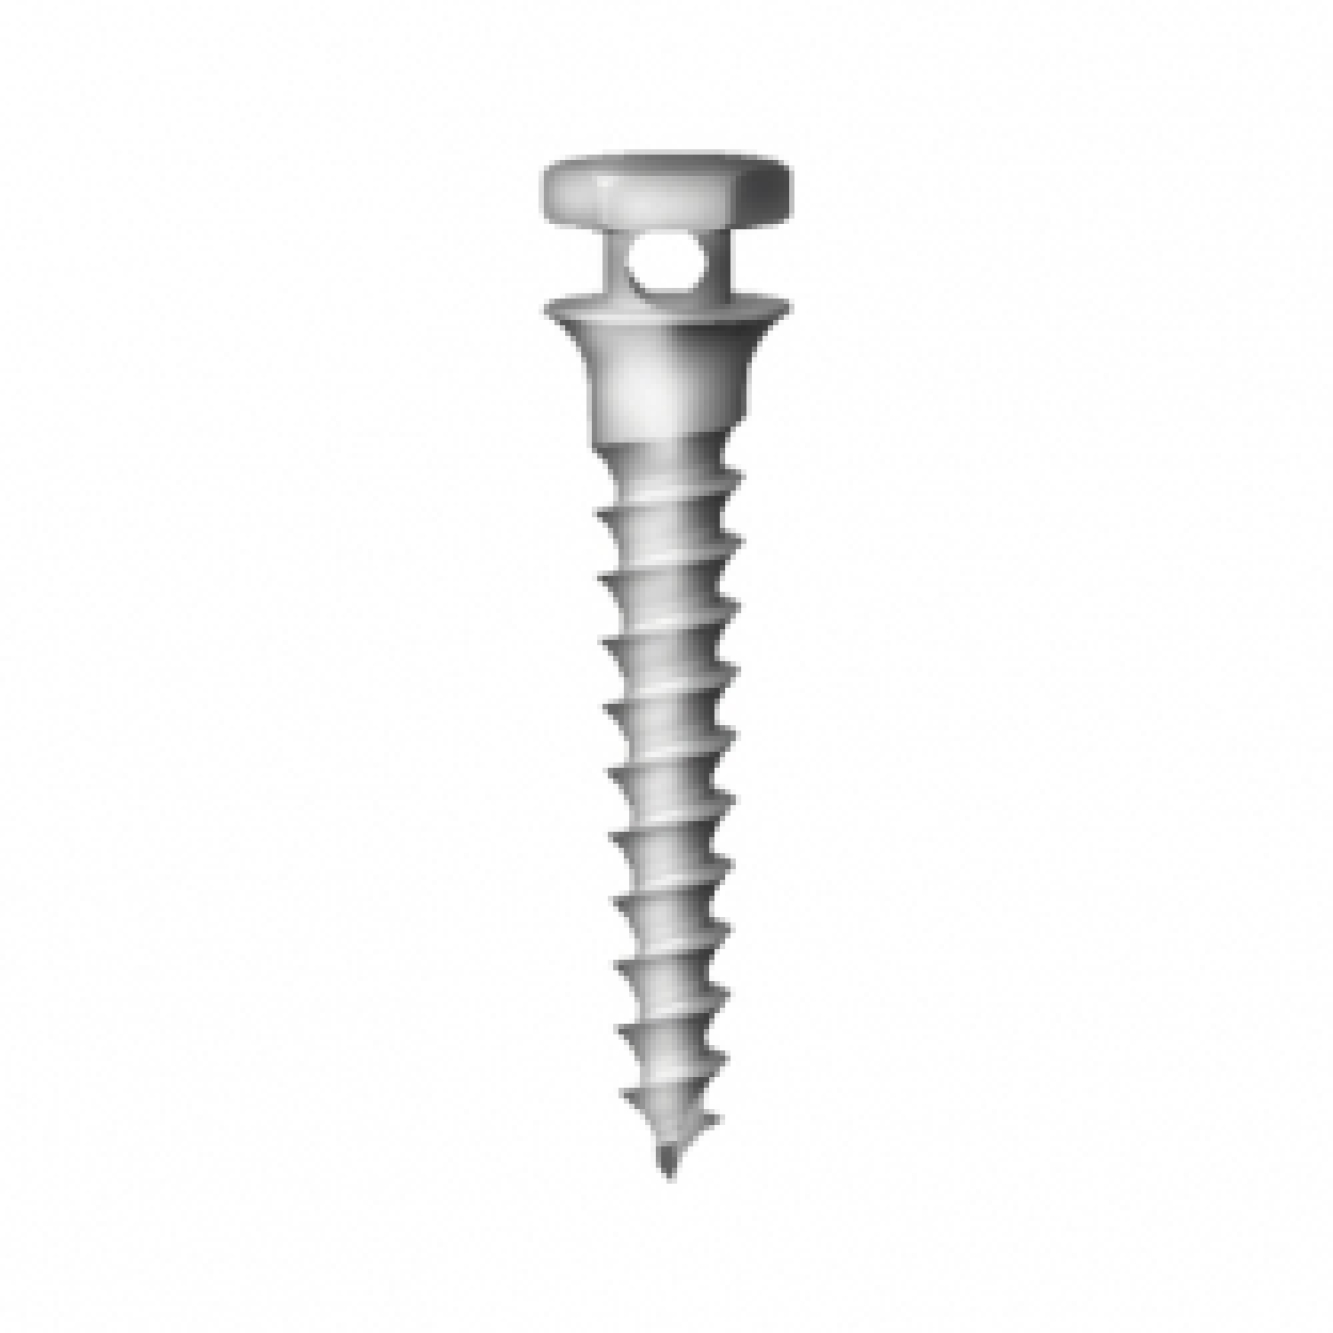 OS-S-16-010 Стоматологический ортодонтический винт для эластичной тяги и проволоки, диаметр 1.6 мм, длина 10 м, Mr.Curette Tech, Южная Корея